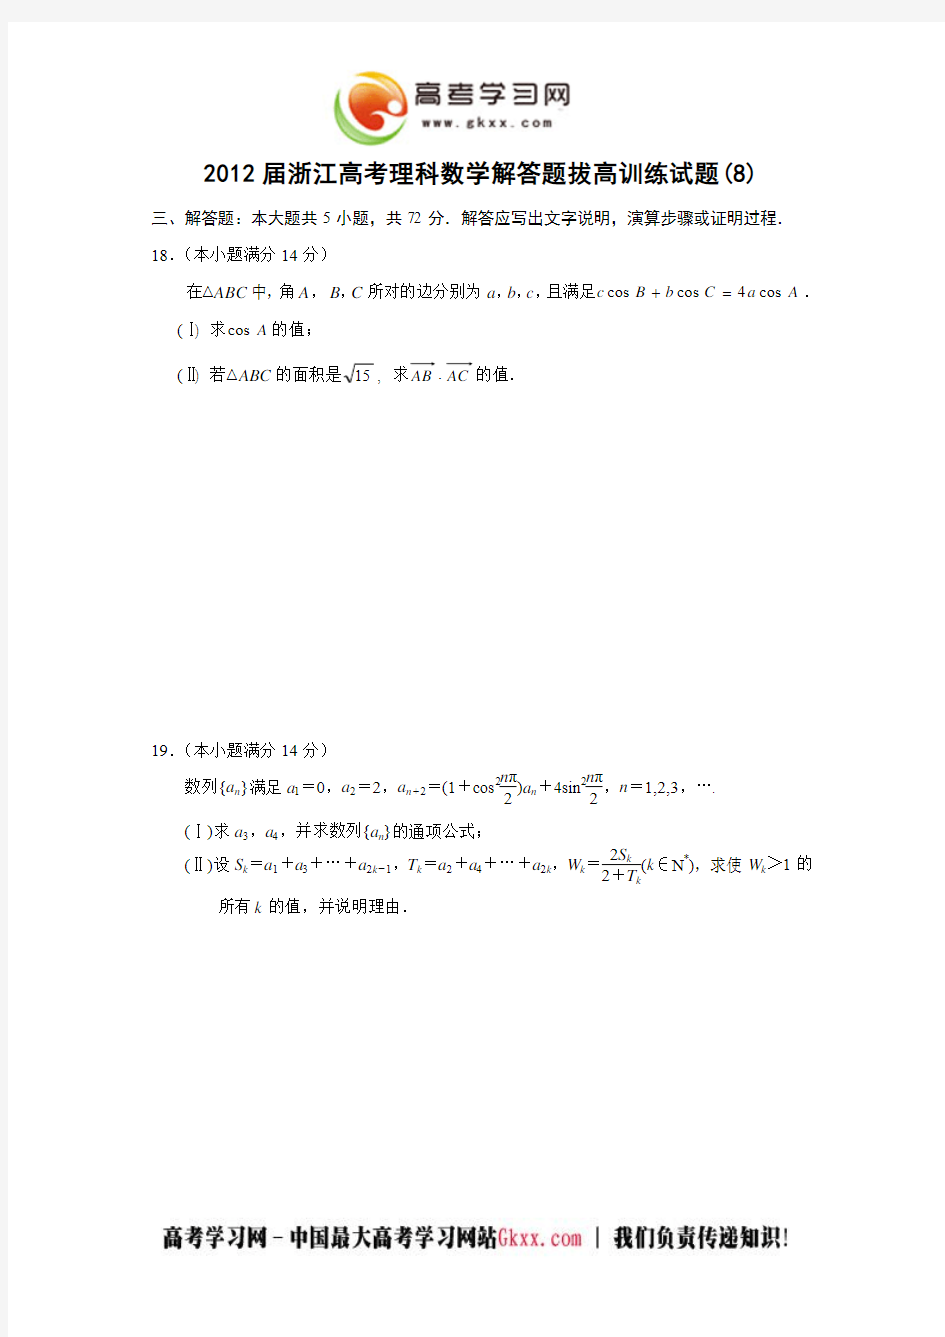 浙江省2012年高考考前理科数学五大解答题拔高训练试题(8)